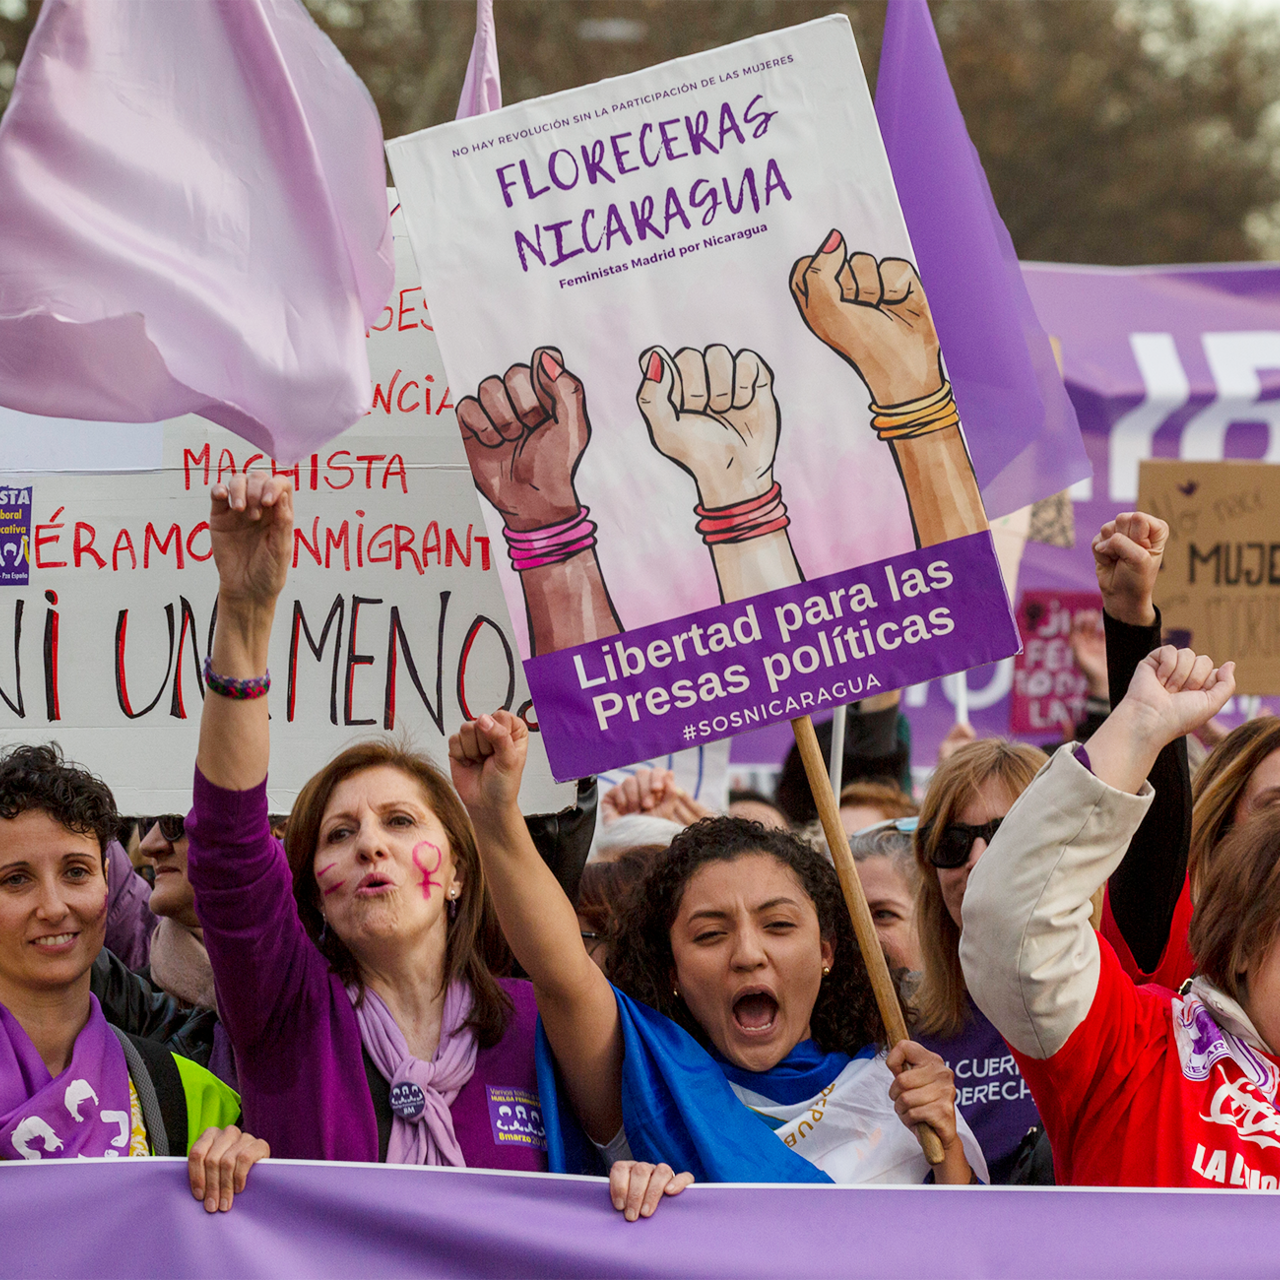 Феминистки. Испанские феминистки. Казахстан феминистки. Феминизм в Испании. Флаг феминизма